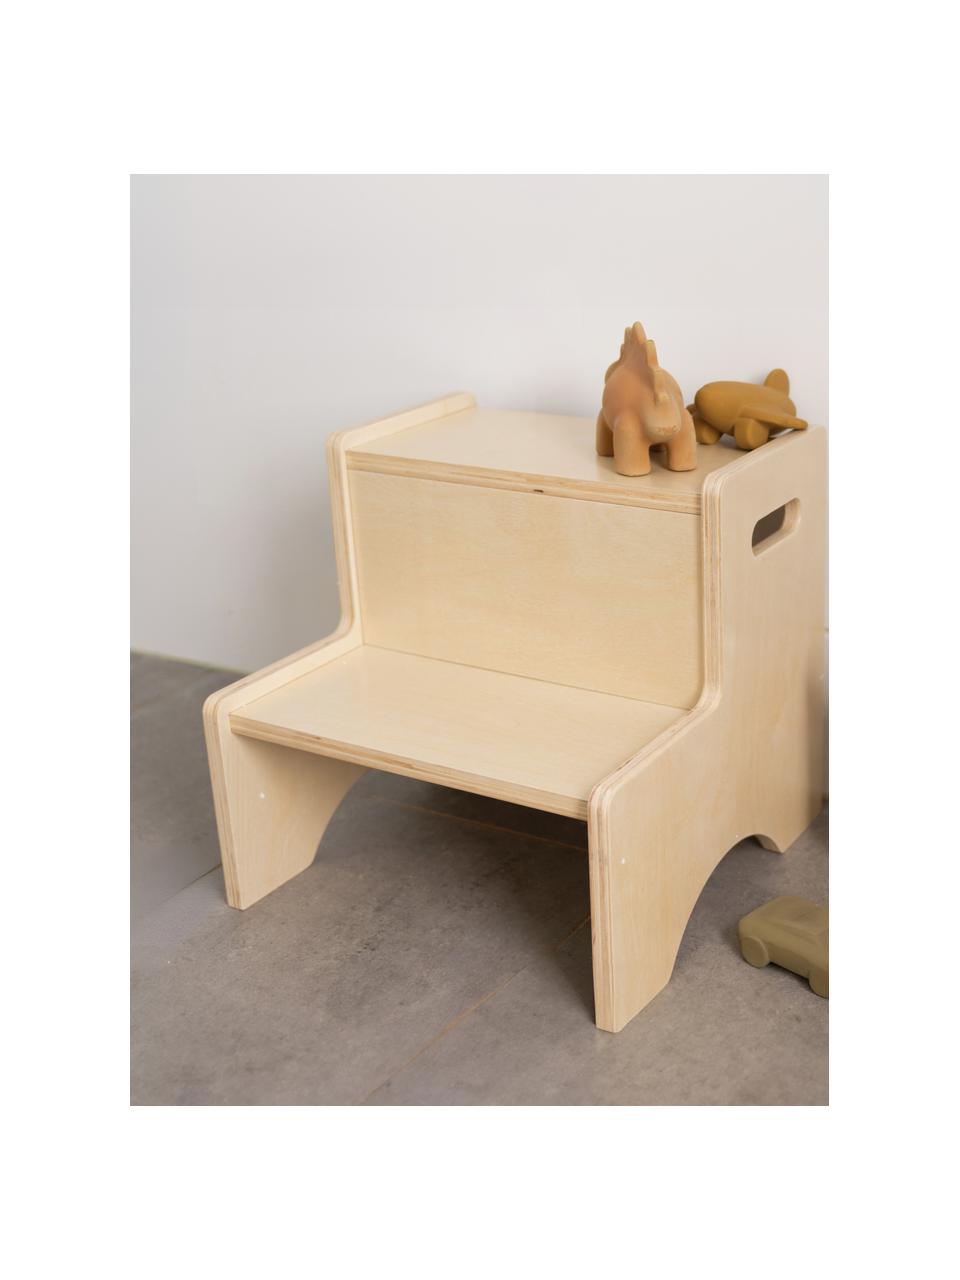 Dřevěná schůdková stolička Graffiti, Topolová překližka

Tento produkt je vyroben z udržitelných zdrojů dřeva s certifikací FSC®., Světlé dřevo, Š 34 cm, V 33 cm